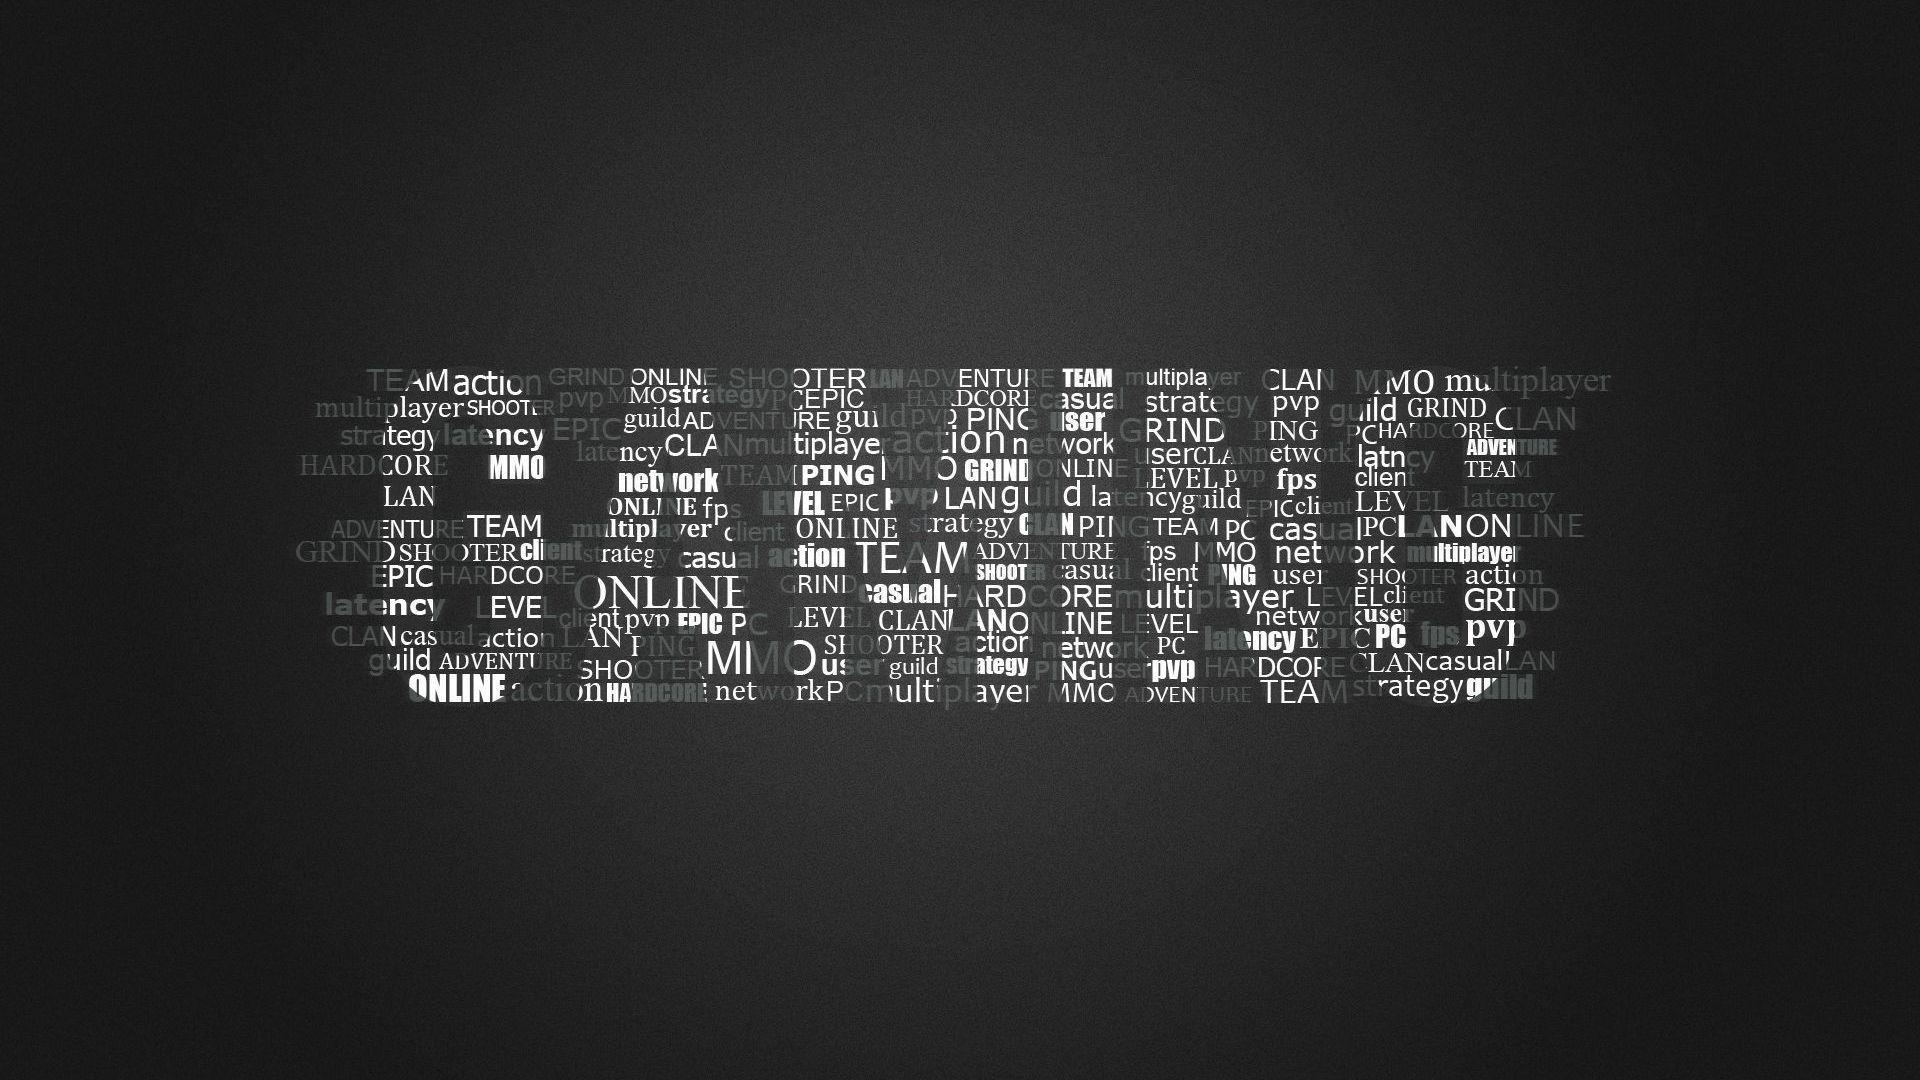 Gaming Logo Wallpaper Free Download. Anthony. Gaming